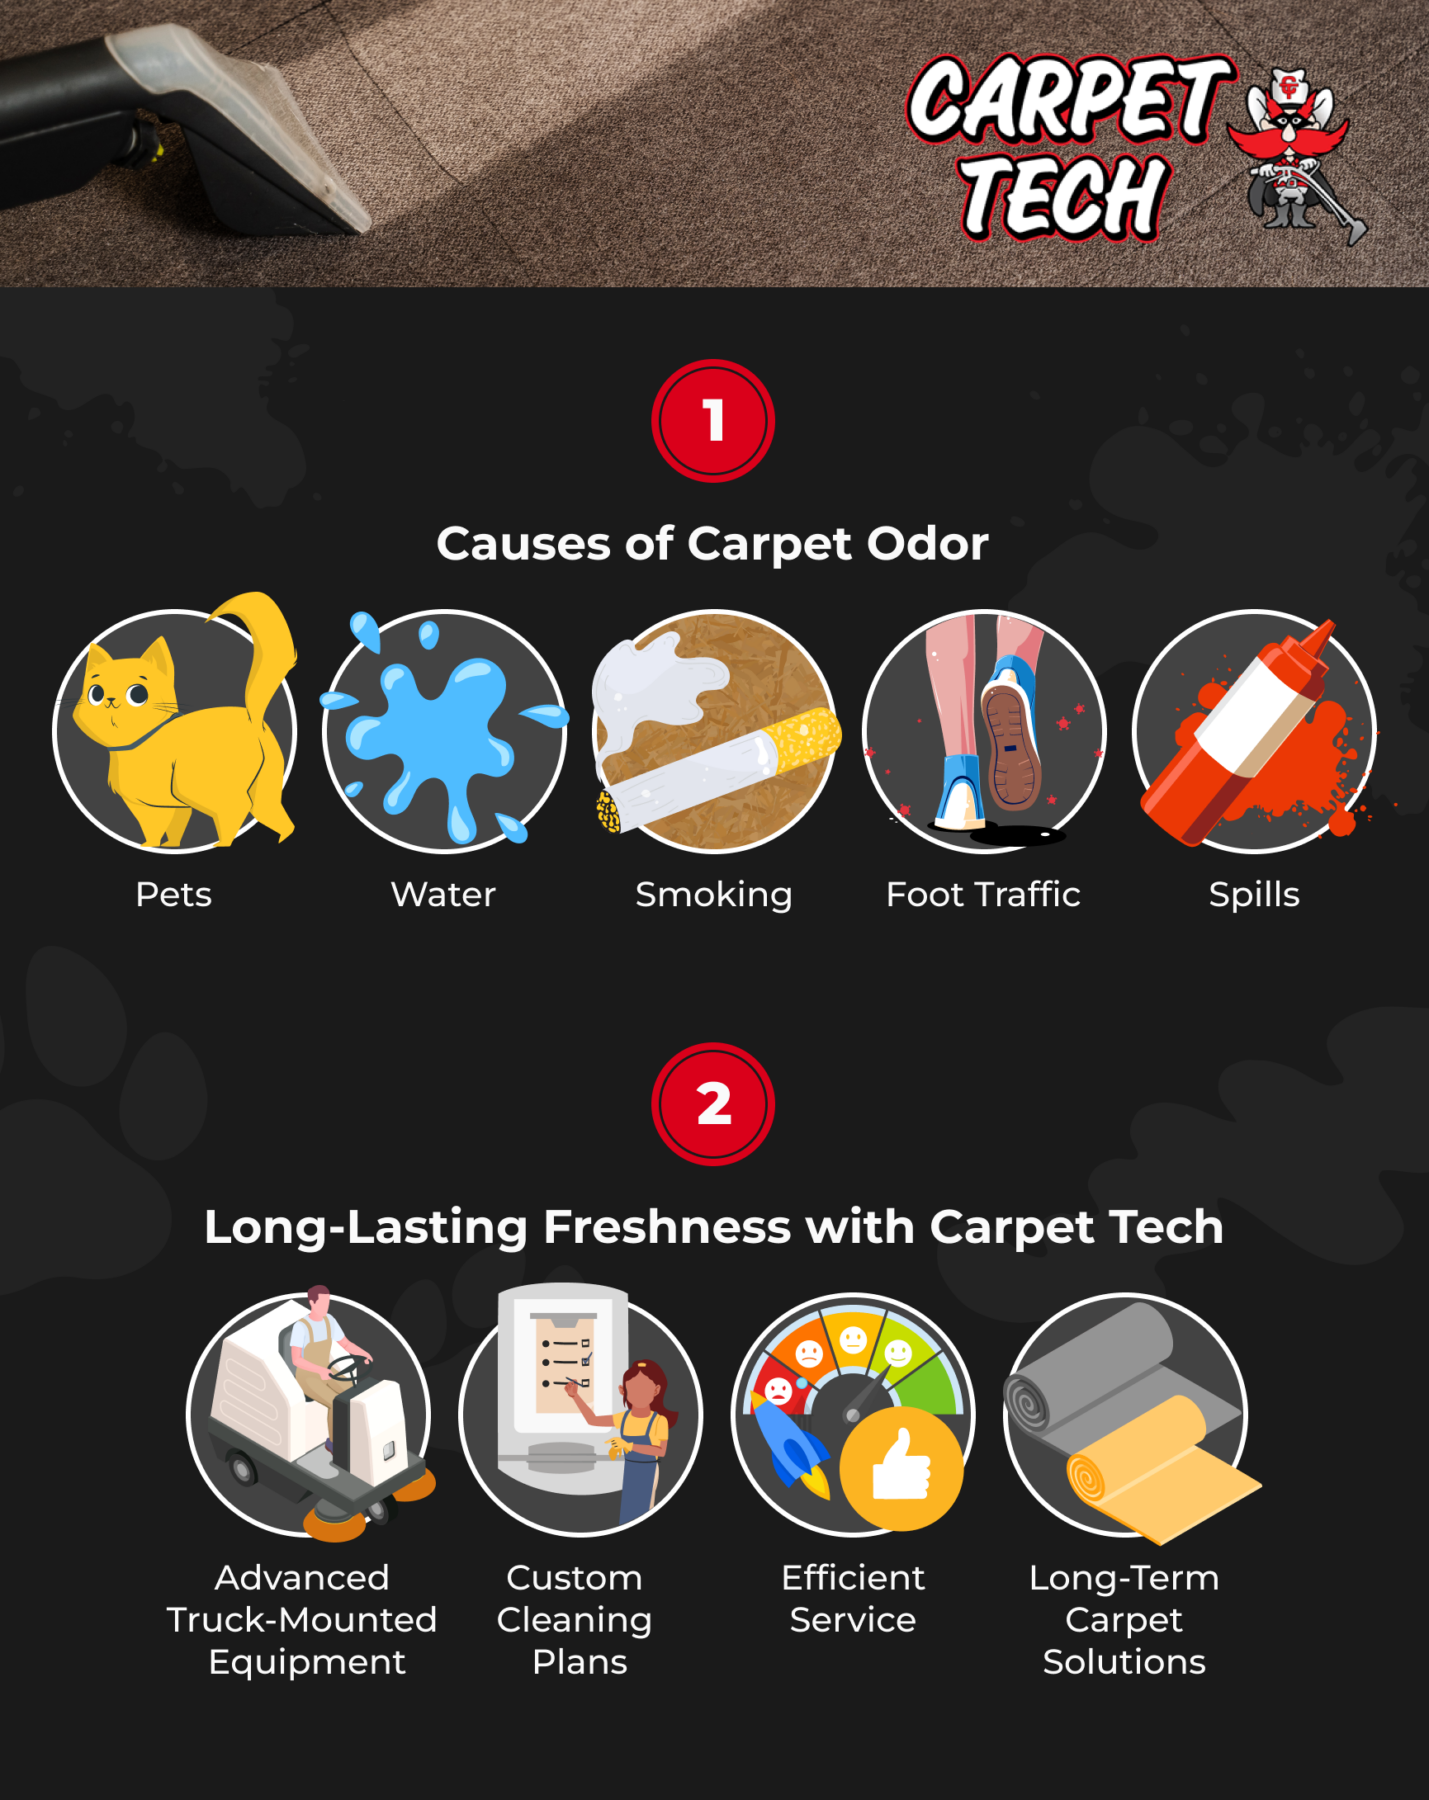 Carpet tech carpet odor infographic